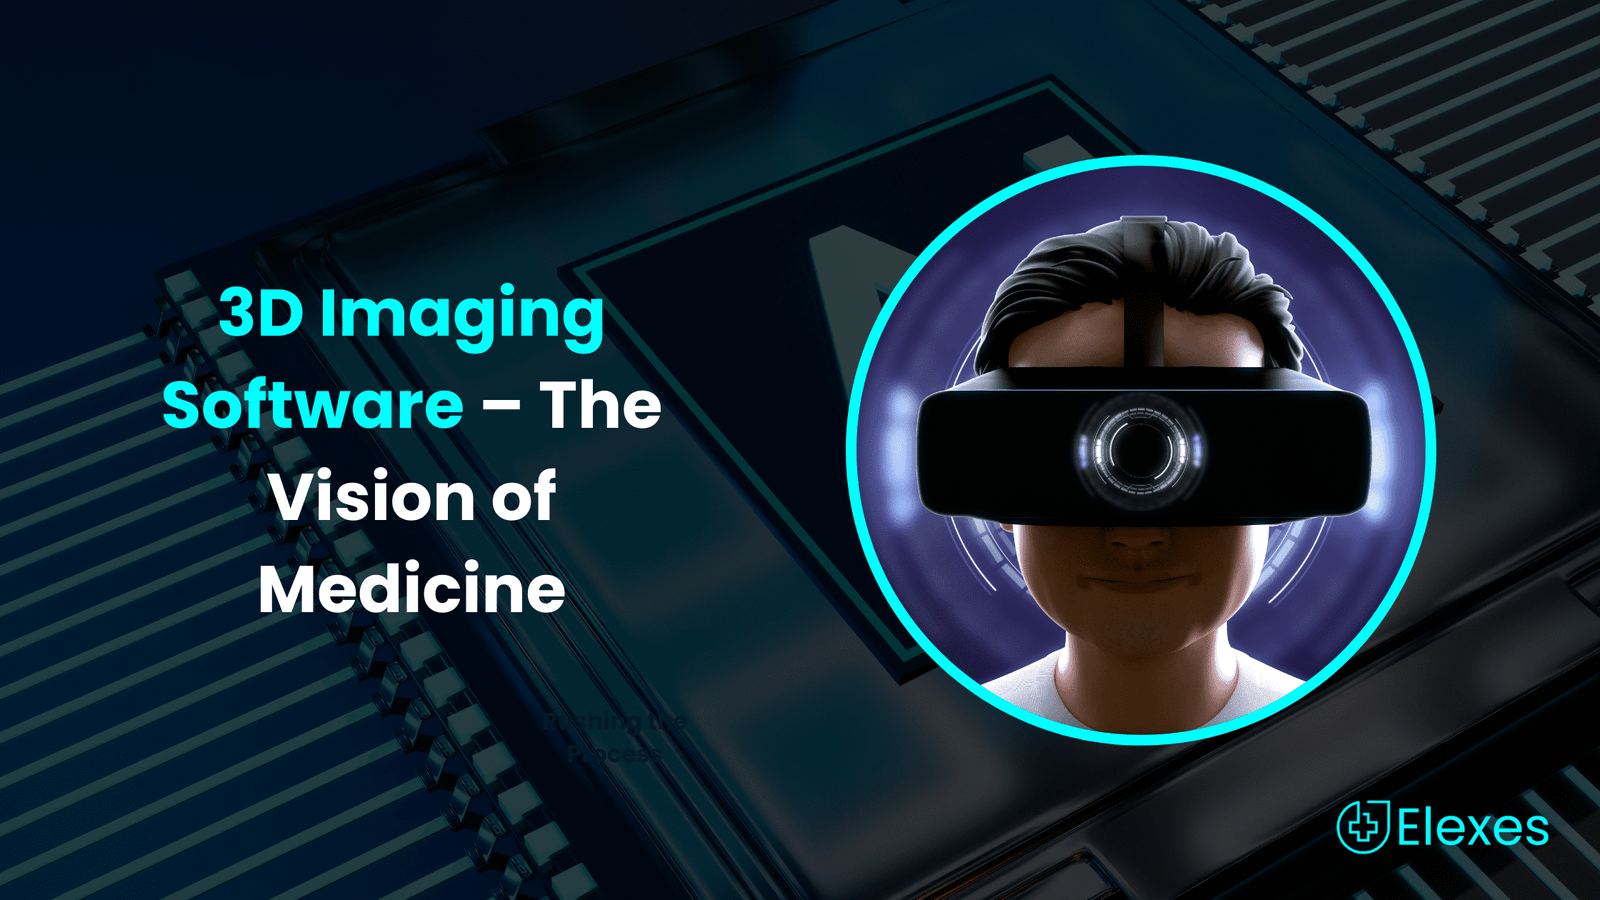 3D Medical Imaging | Revolutionizing The Vision of Medicine